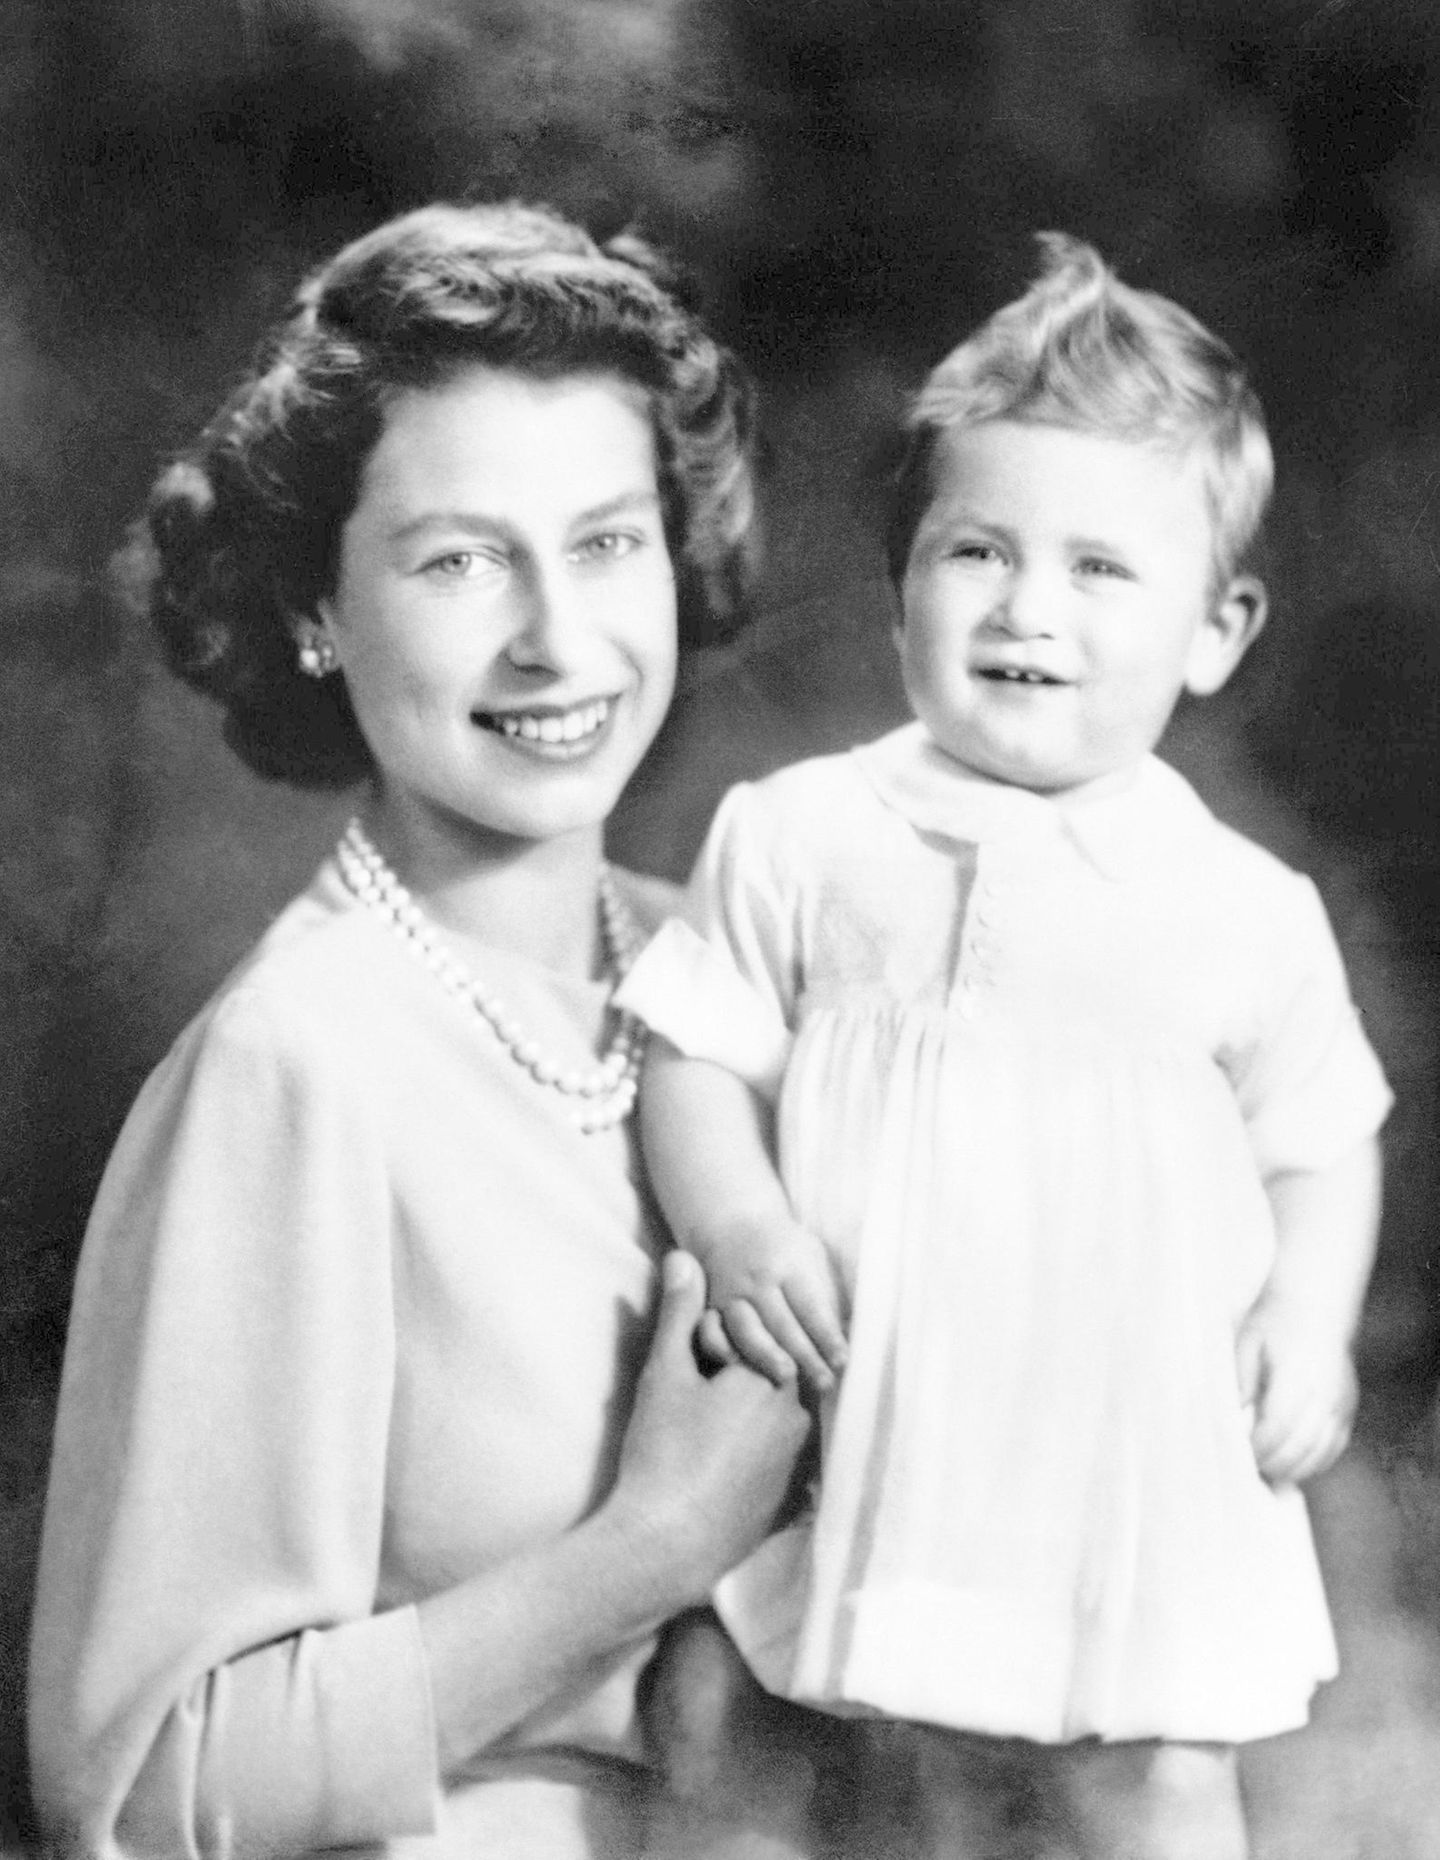 Zwei Tage vor dem zweiten Geburtstag von Prinz Charles ensteht 1949 dieses fröhliche Bild von ihm und seiner Mutter Prinzessin Elizabeth. Man hält für den kleinen Prinzen fest, er wiege 11,11 Kilogramm, habe sechs Zähne und könnte einige Schritte laufen. Zumindest die Haartolle meint man später an Prinz George wiederzuentdecken ...